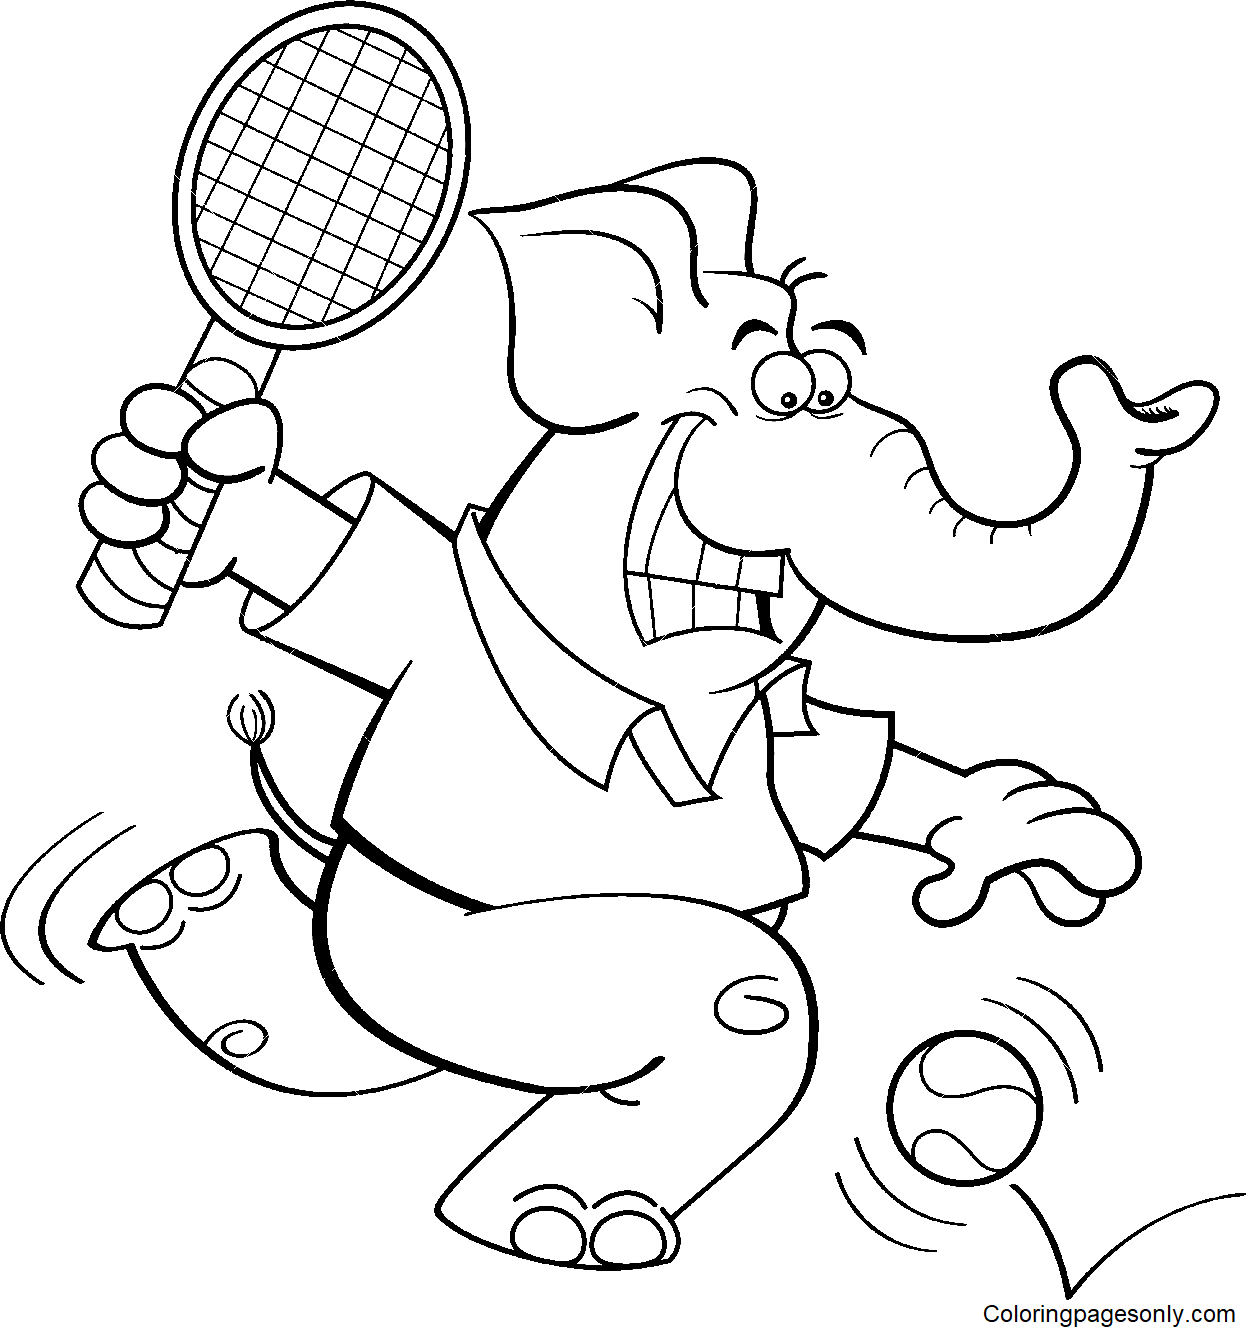 Elefante jugando al tenis desde el tenis.